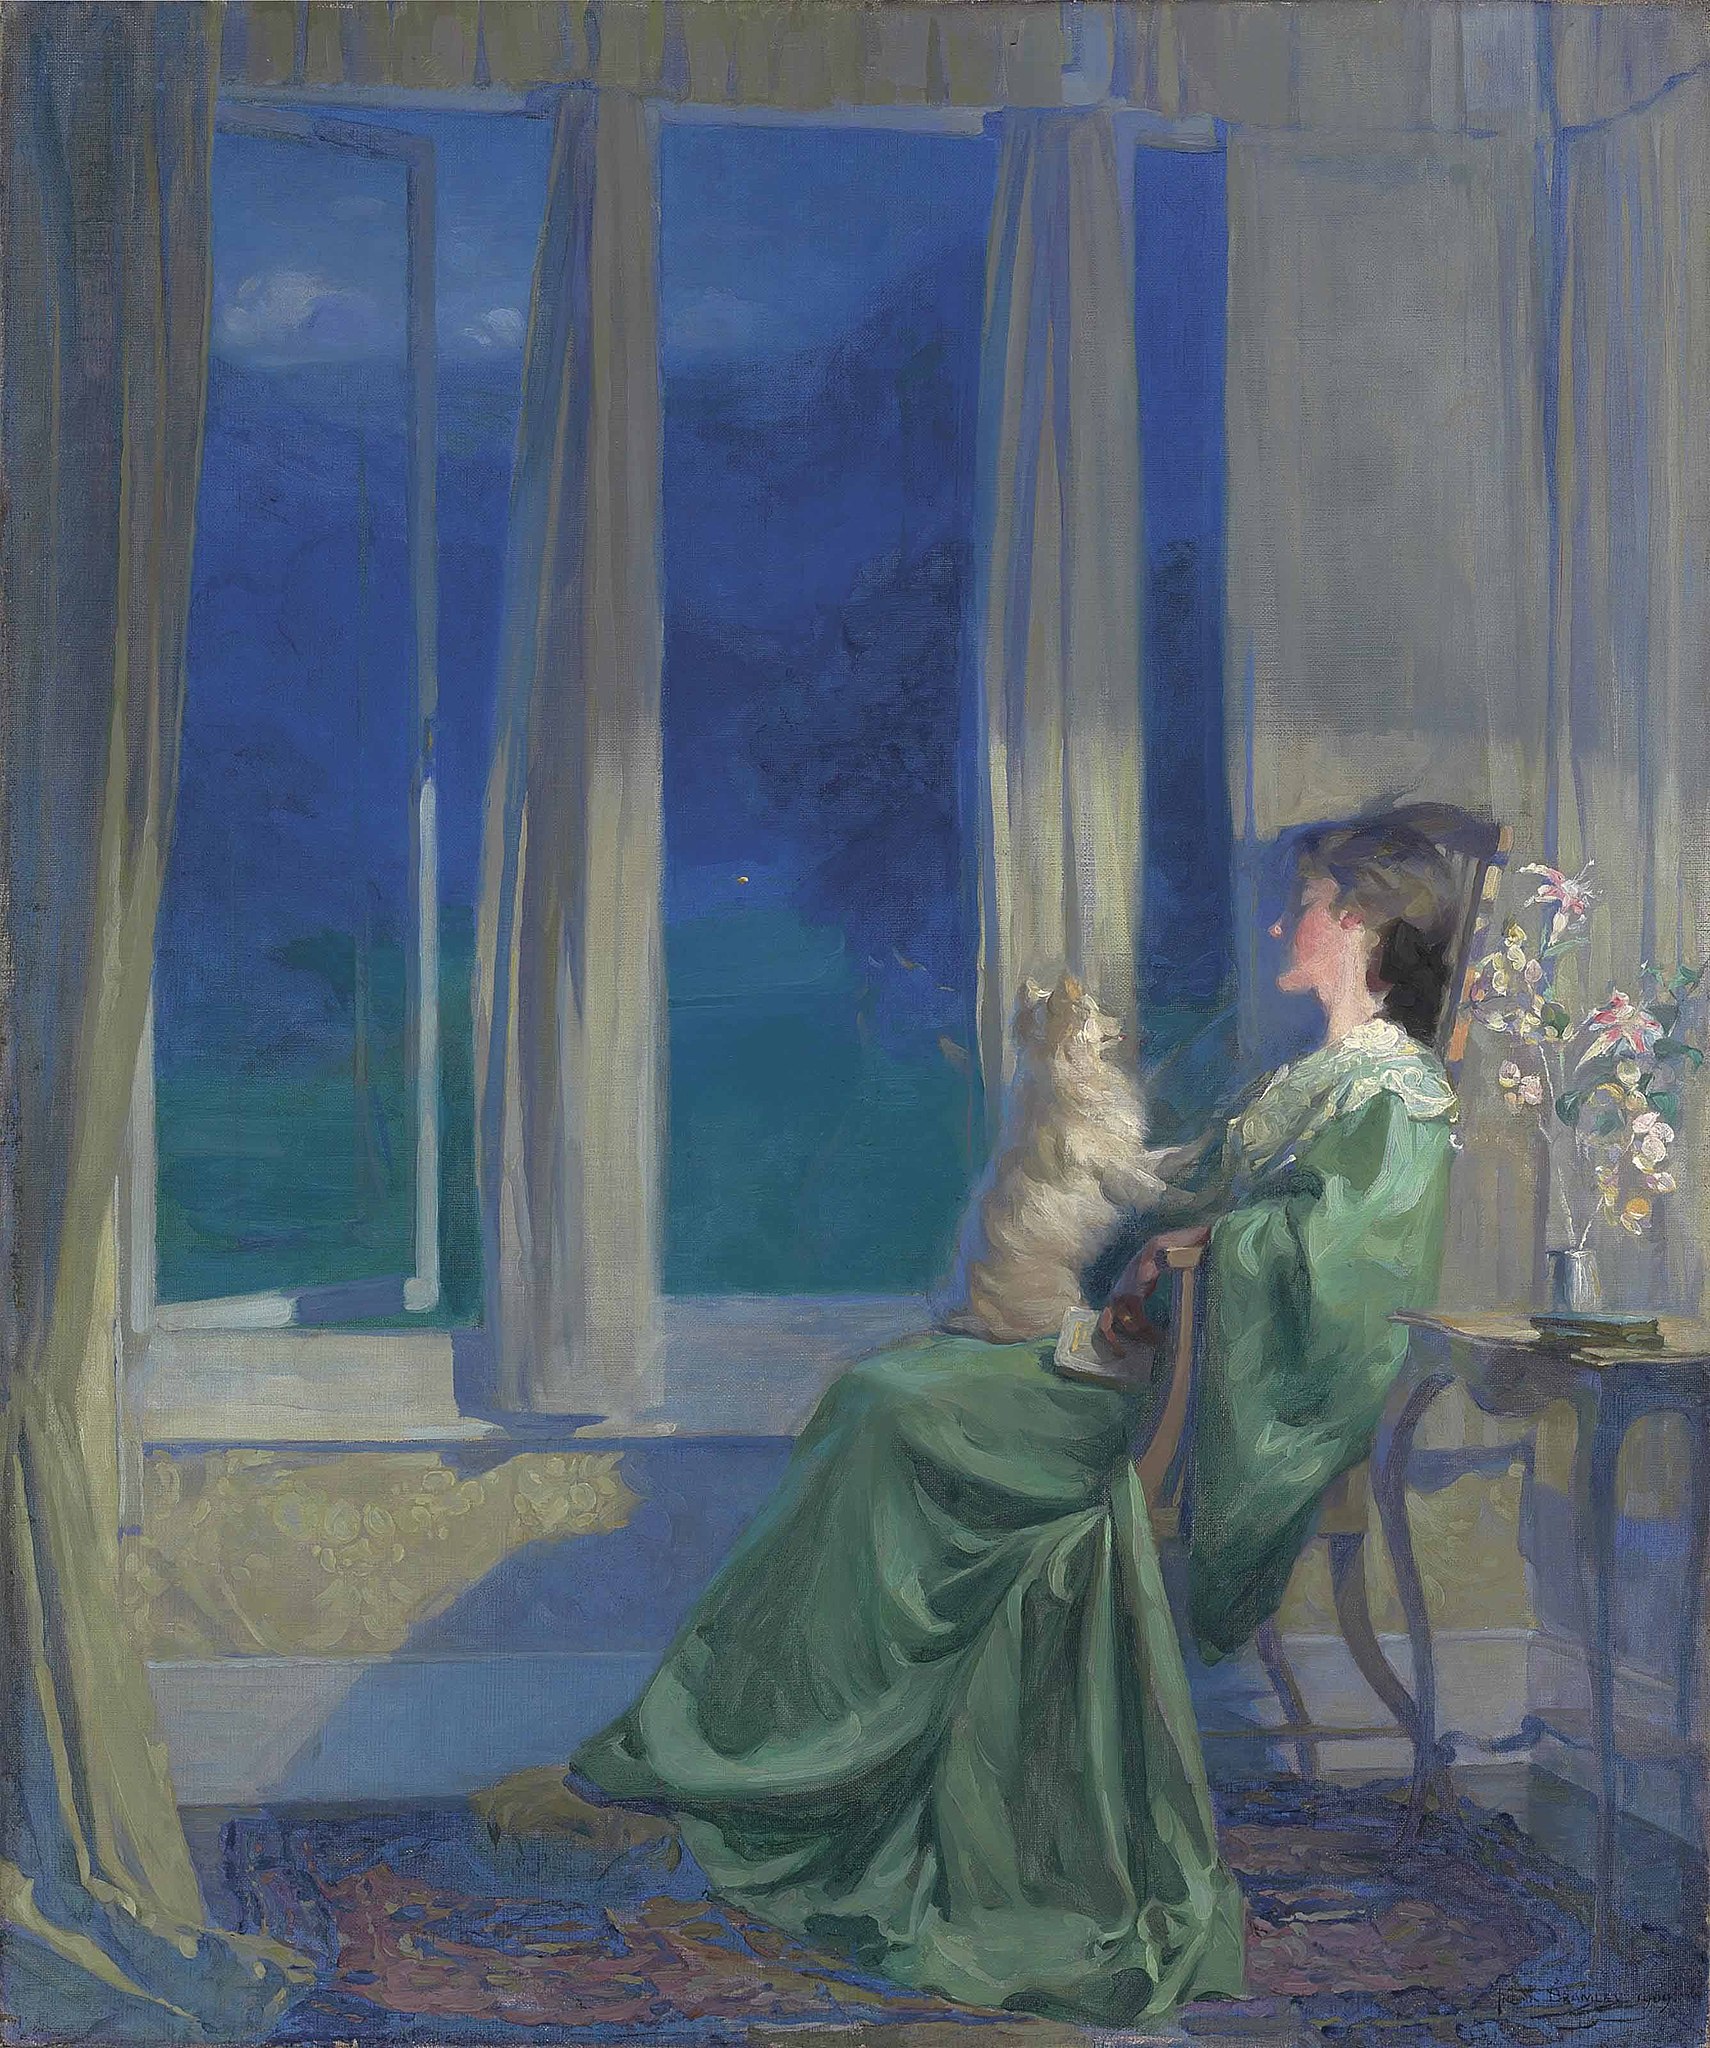 Када плаво вече полако пада by Frank Bramley - 1909. - 90,8 x 76,8 cm 